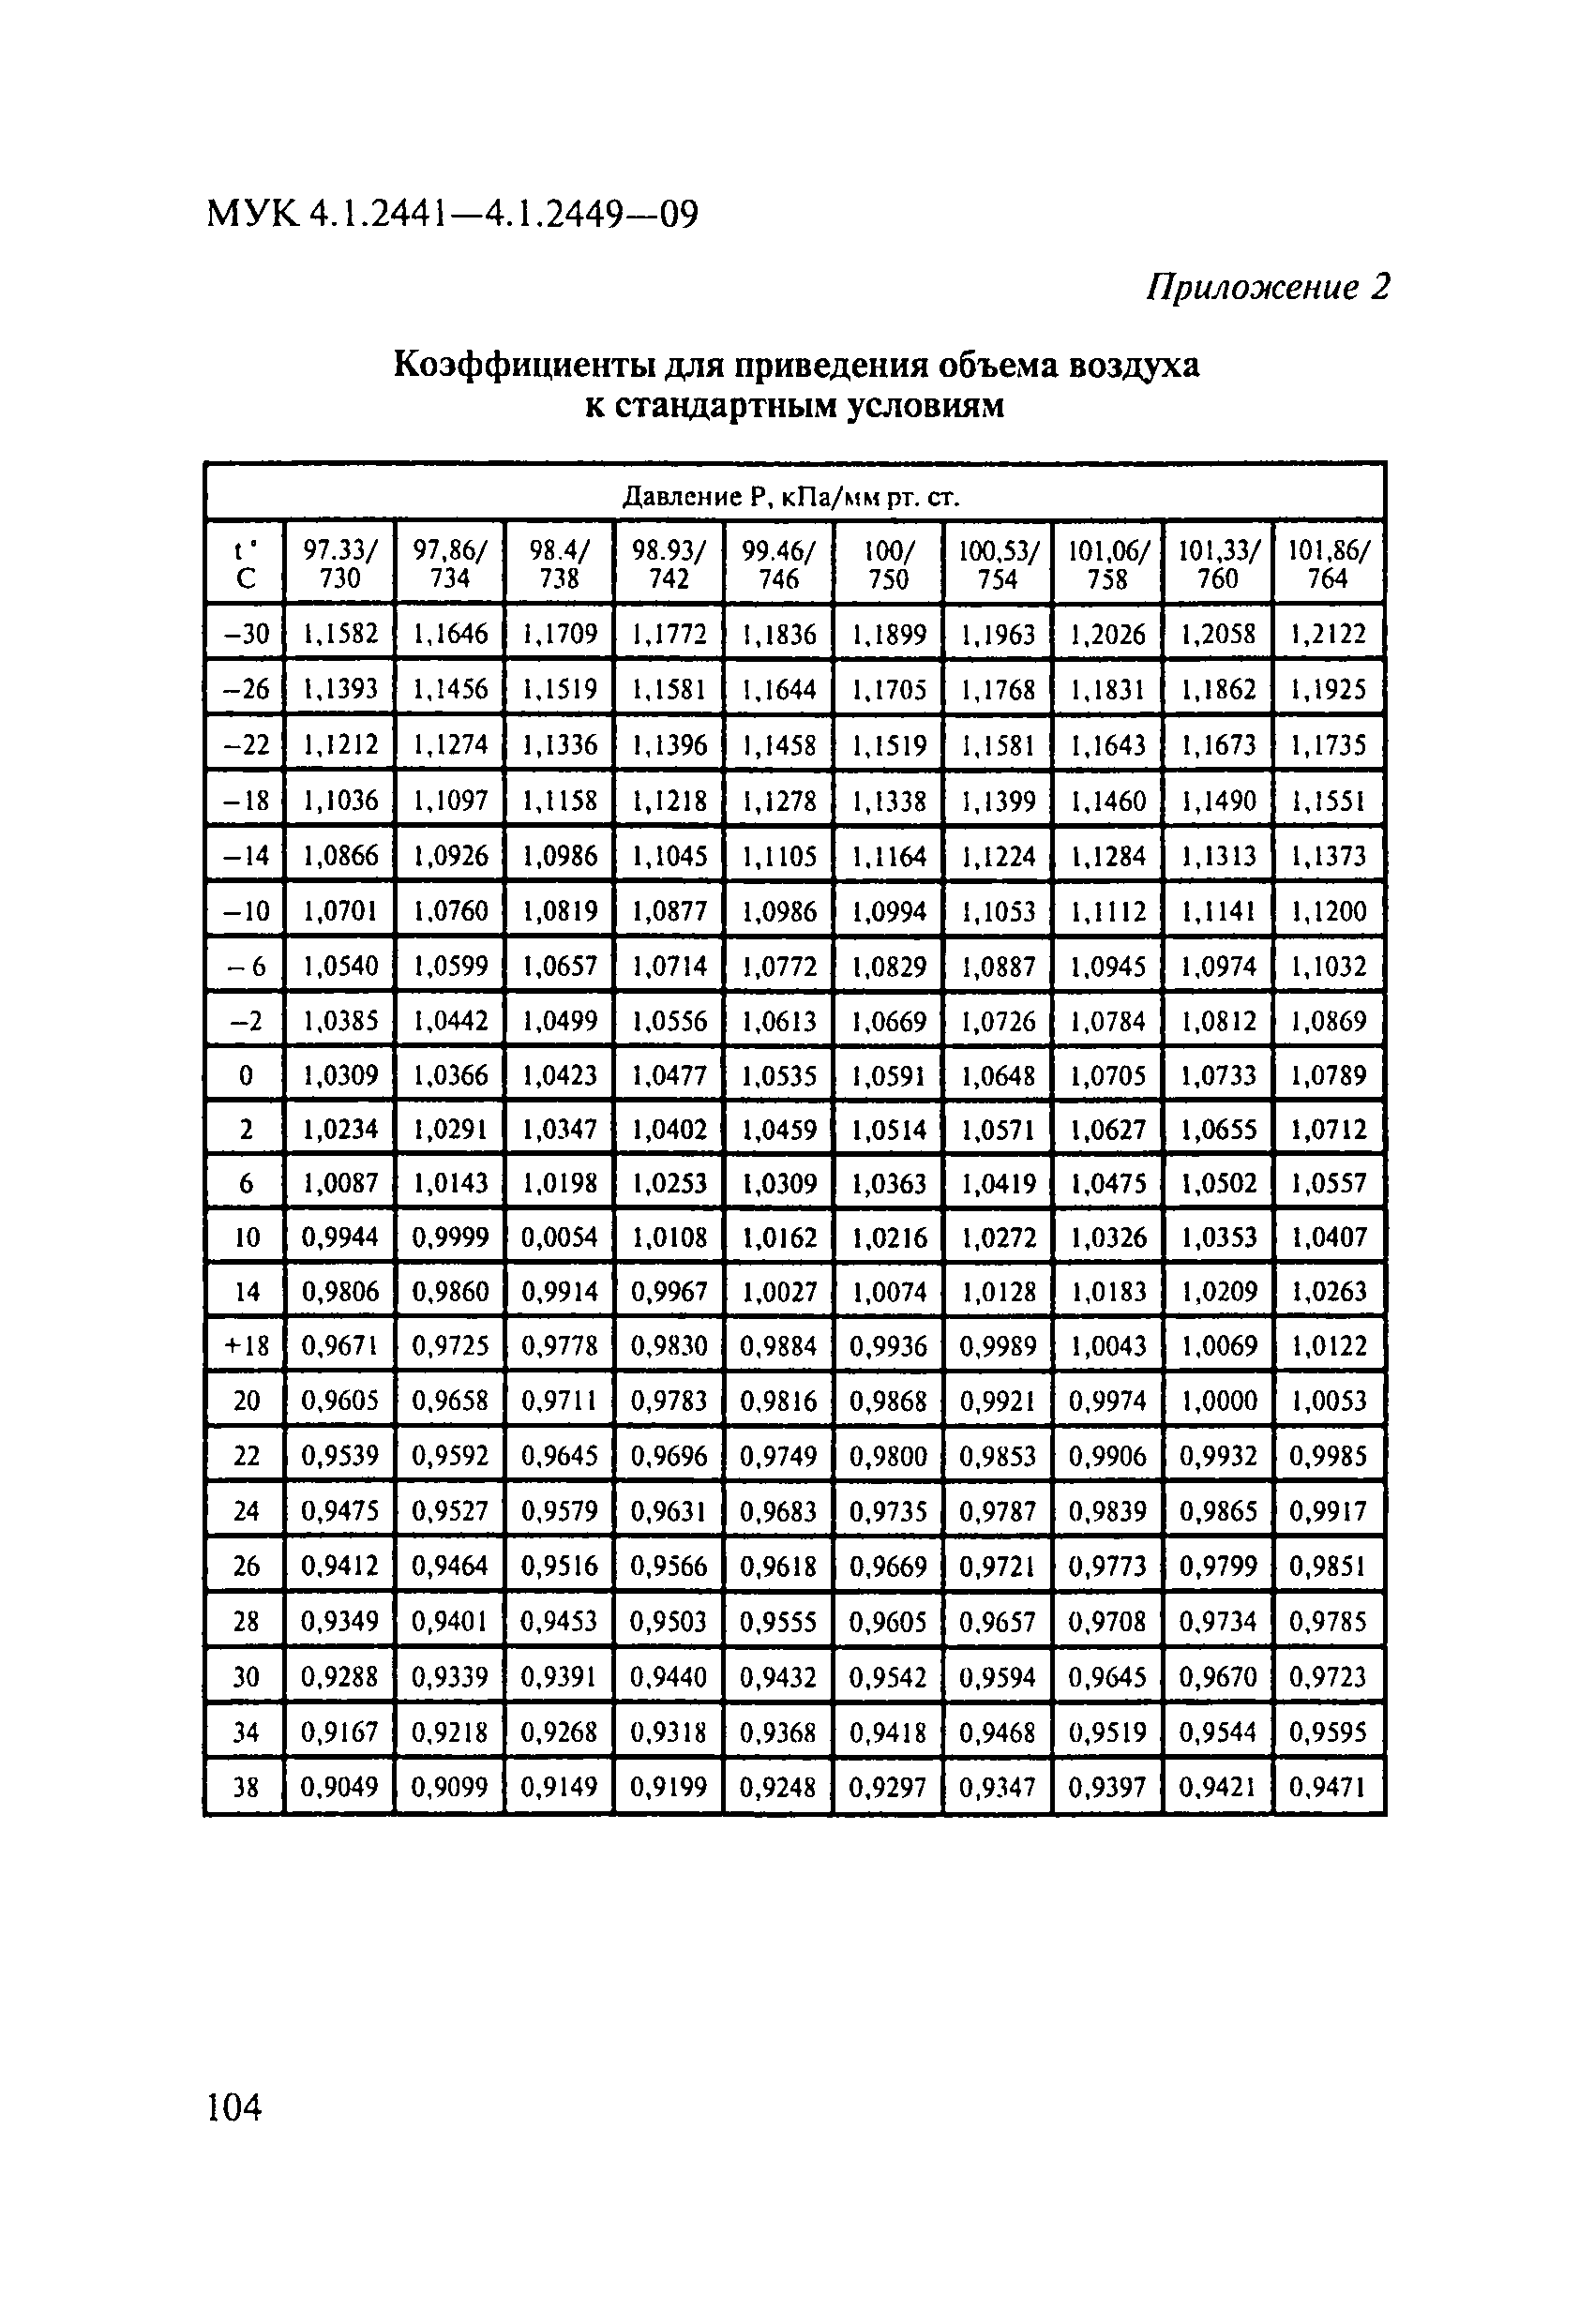 МУК 4.1.2445-09